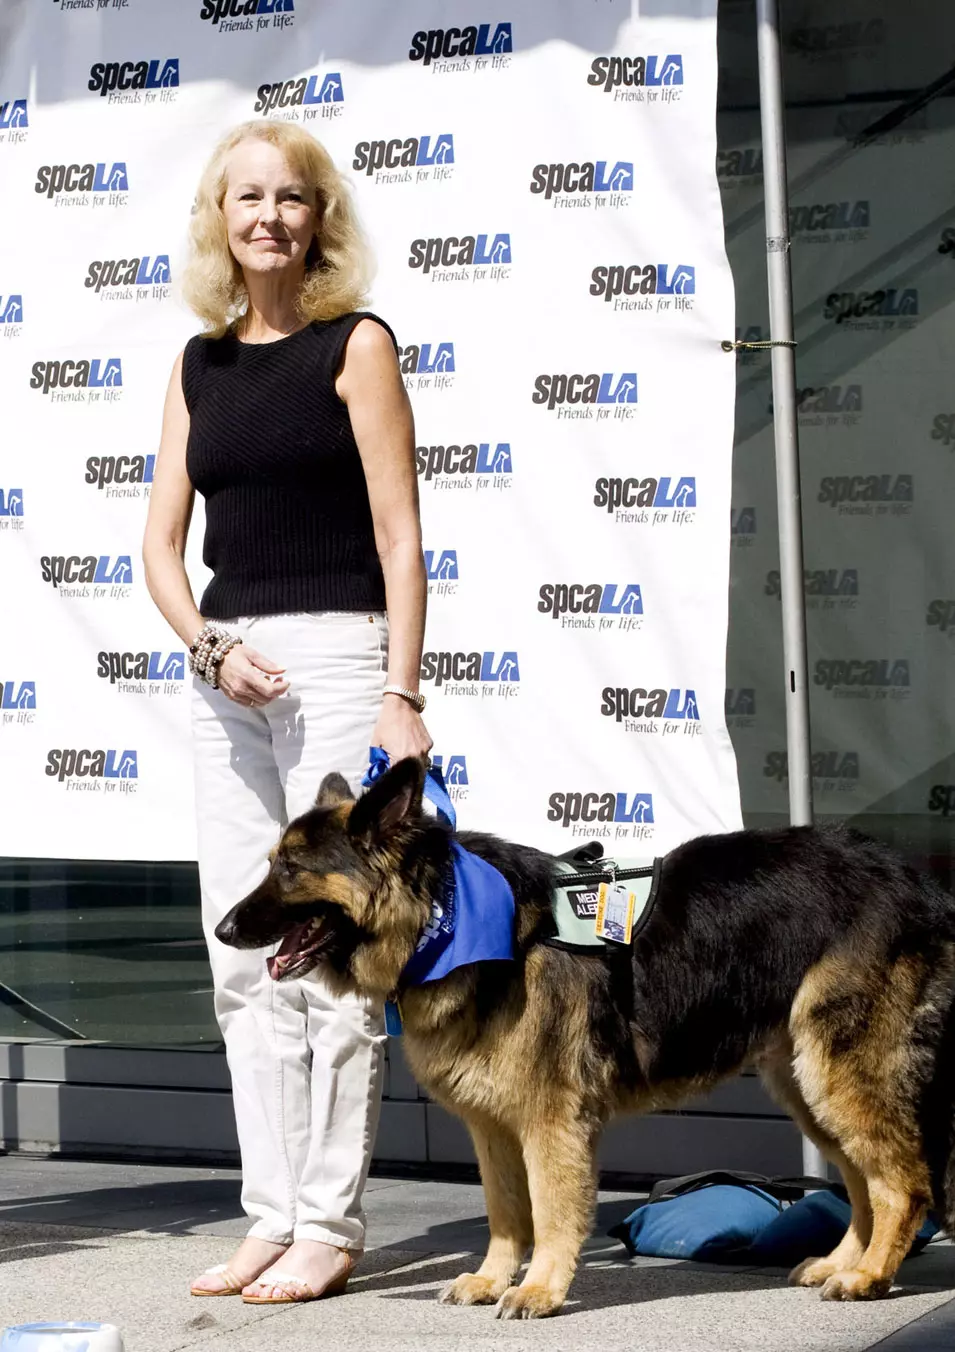 פרס לכלב שהציל את בעליו, לוס אנג'לס. 7.5.2012